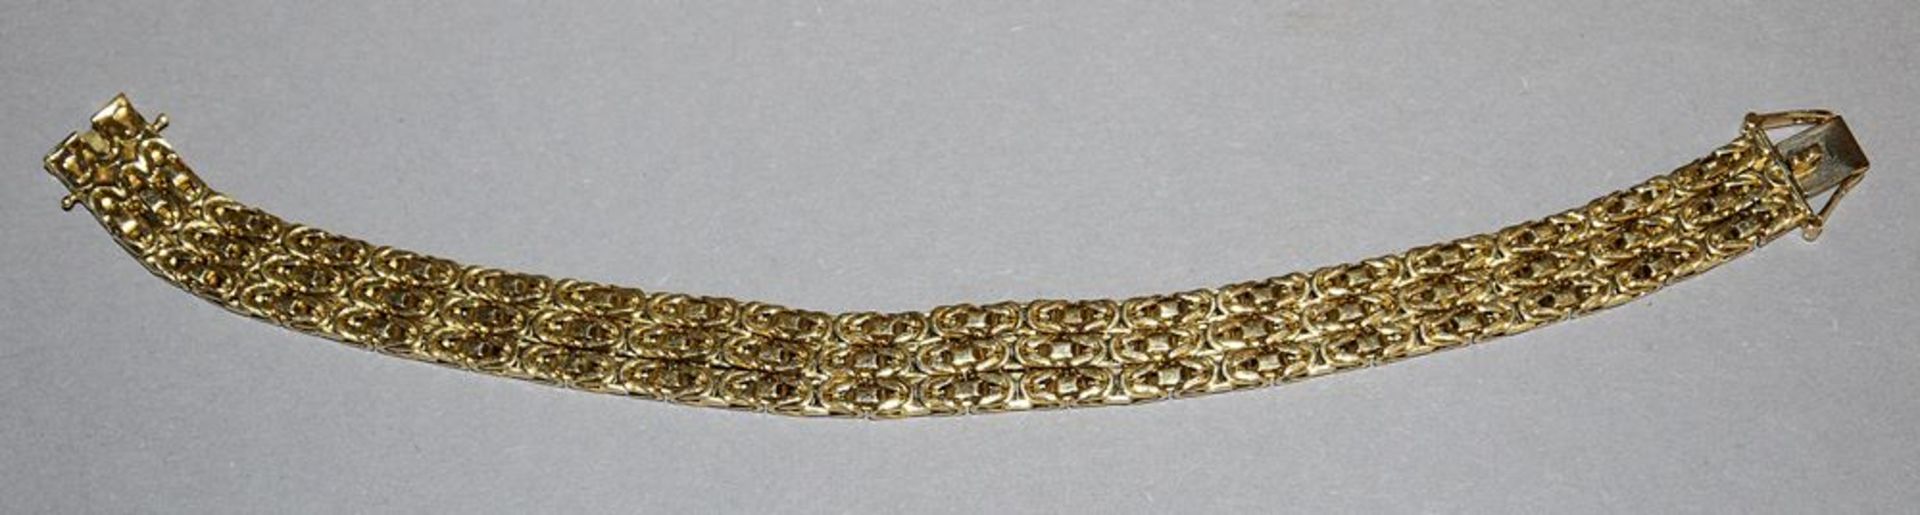 Königs-Armband, Gold